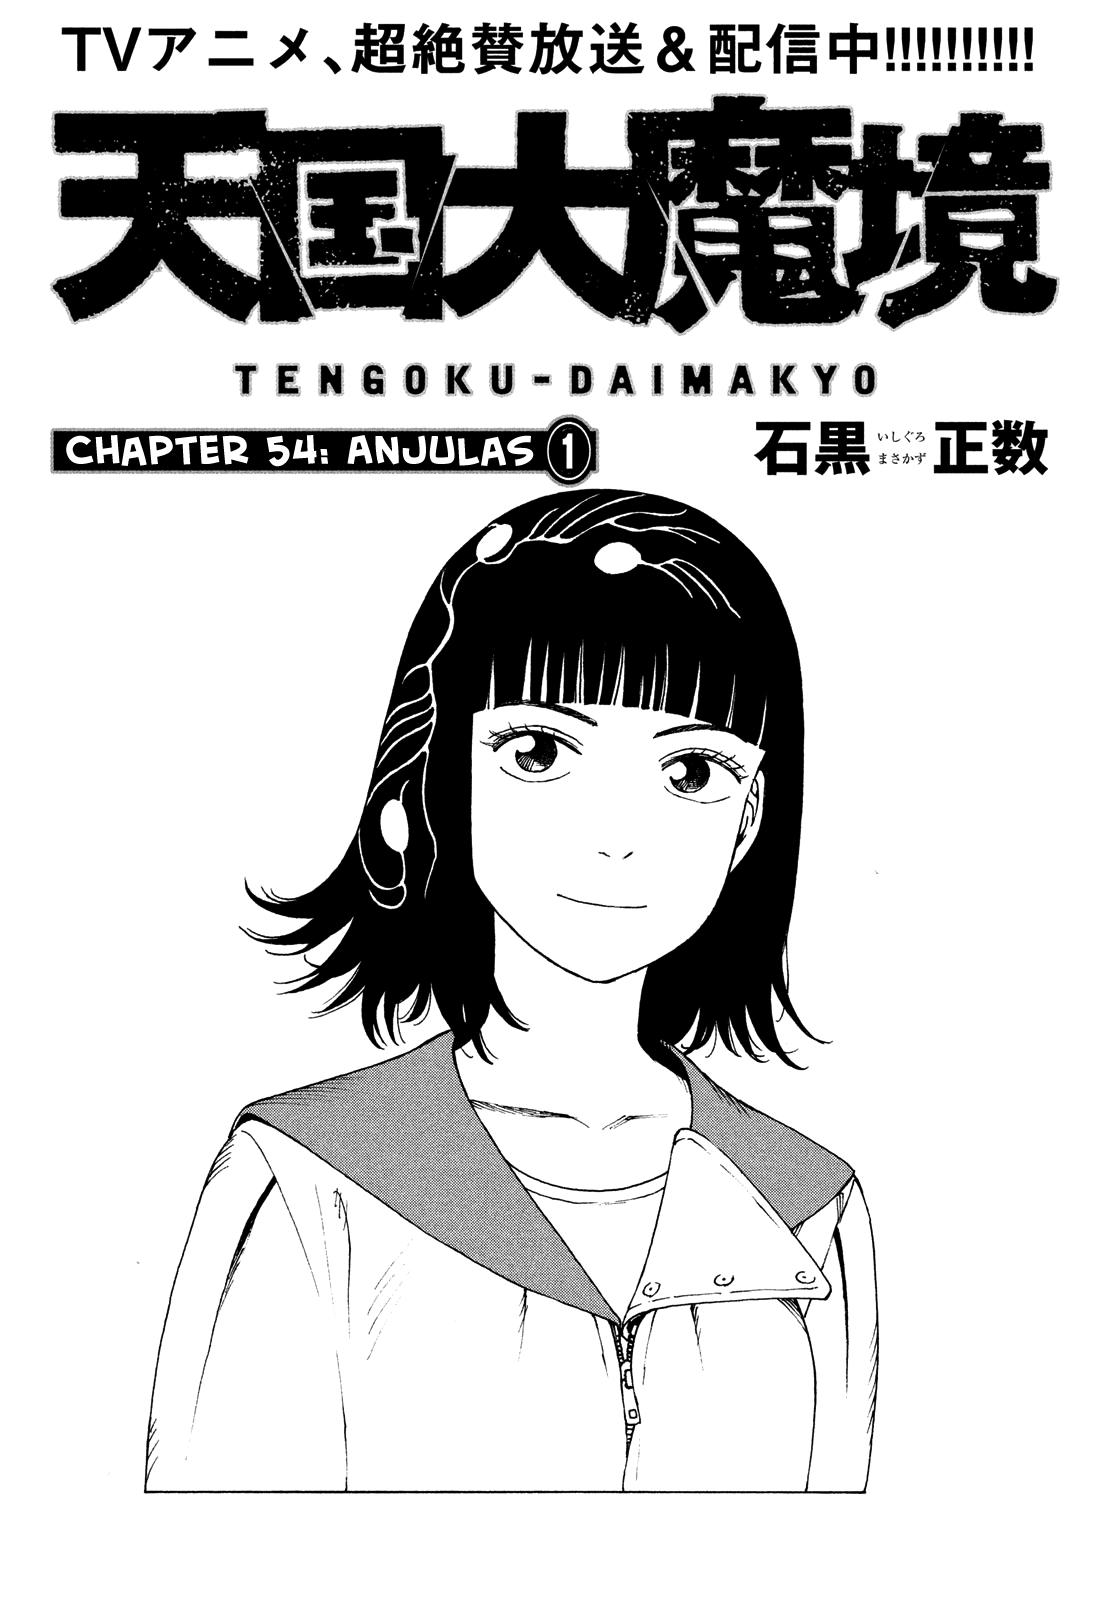 Tengoku Daimakyou Vol.9 Chapter 54: Anjulous ➀ page 5 - Mangakakalot